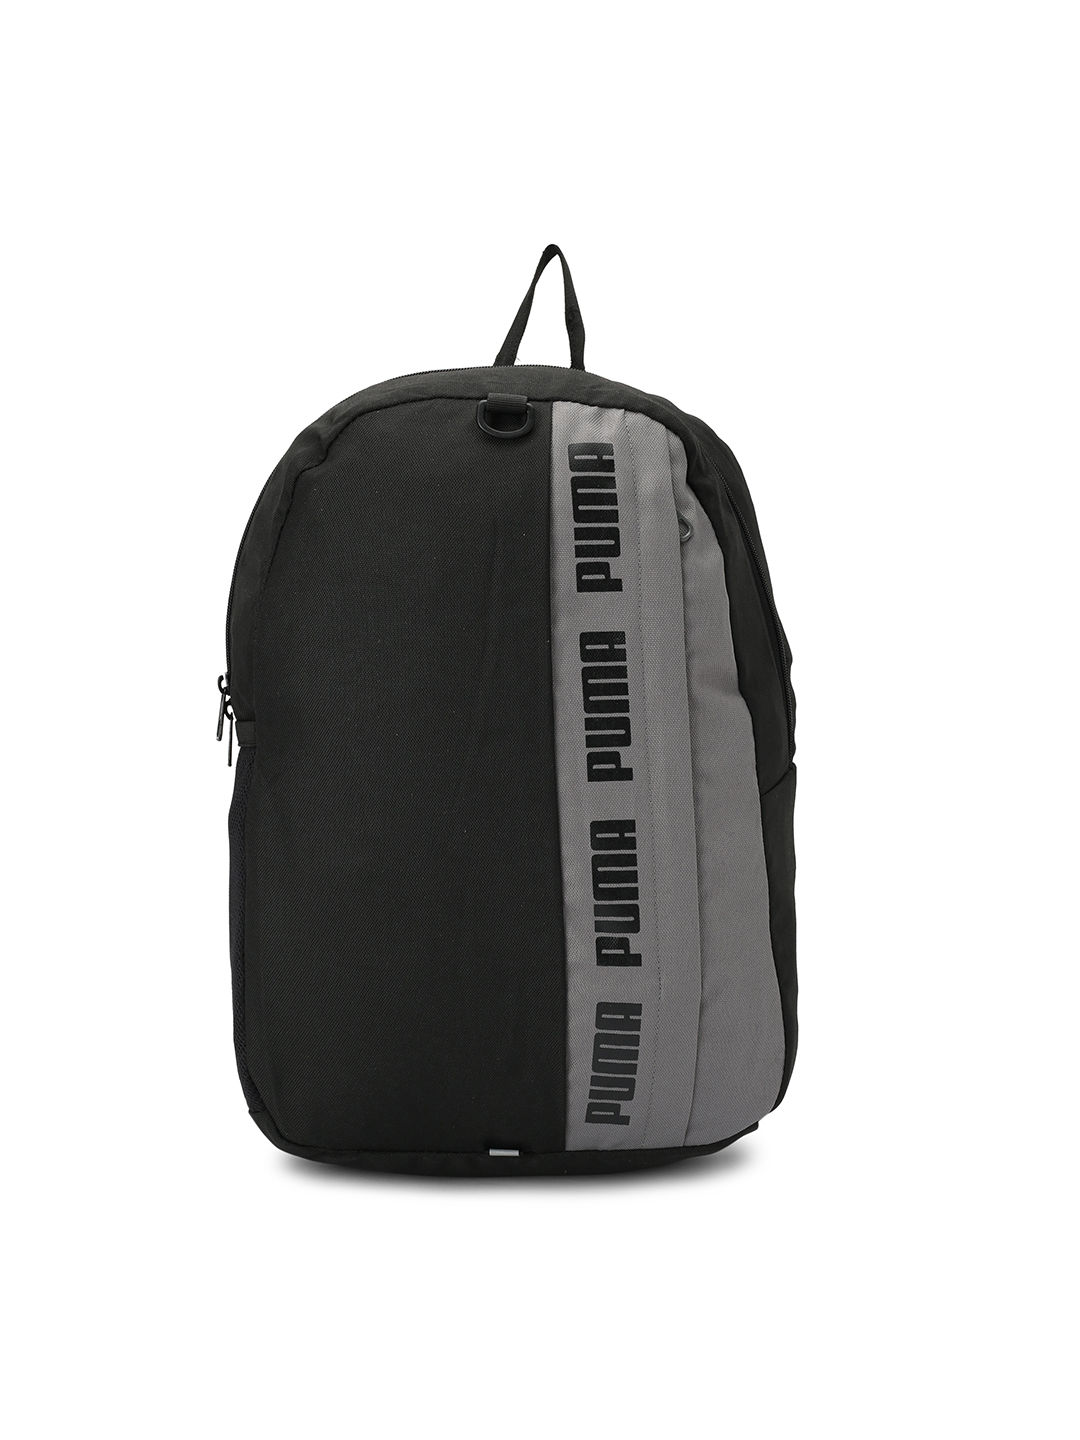 puma phase 2 backpack